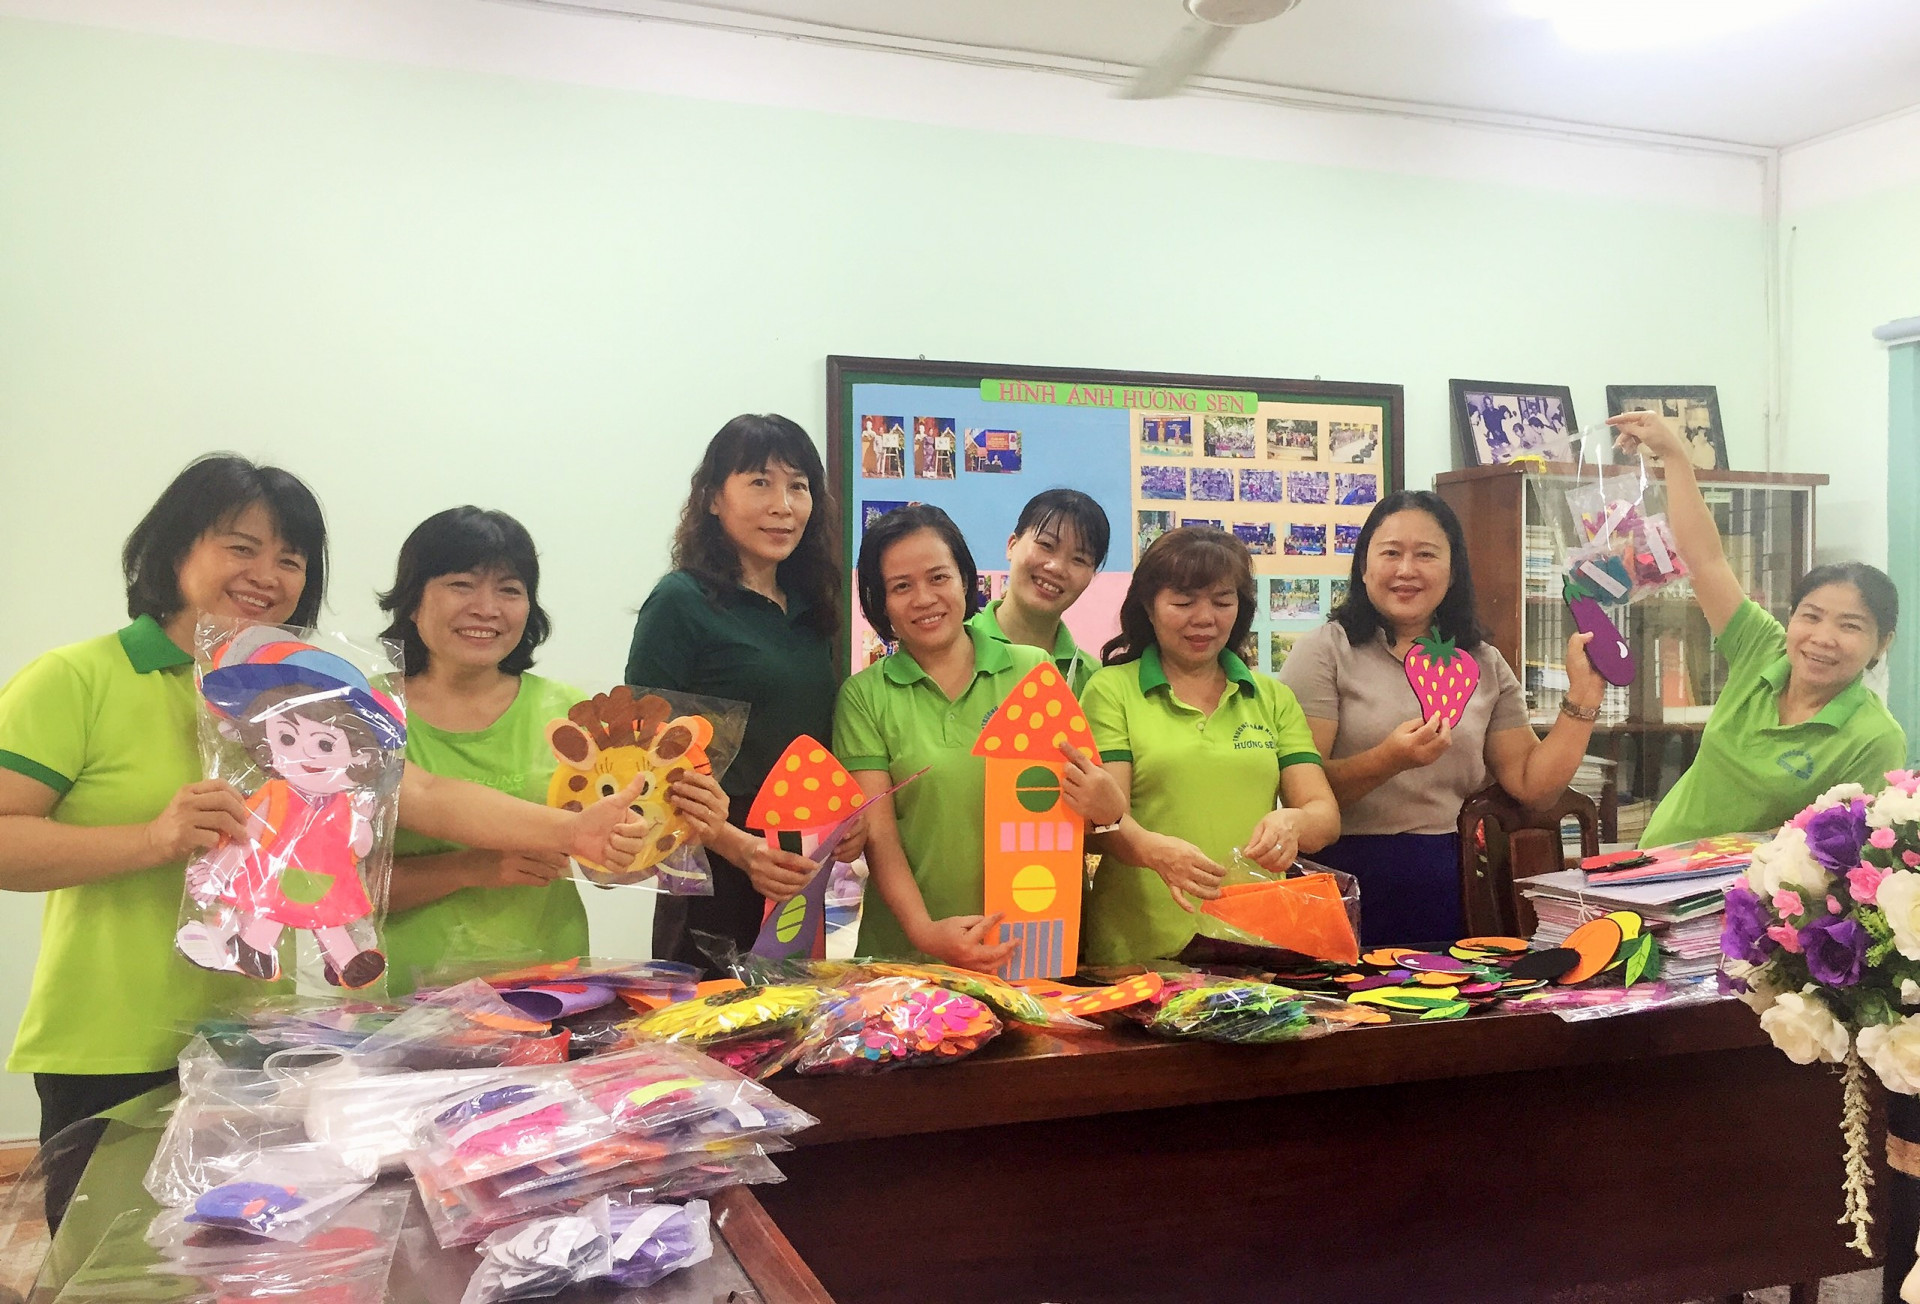 Hưởng ứng sự kêu gọi của Sở Giáo dục và Đào tạo Khánh Hòa và các phòng giáo dục và đào tạo, các cô giáo mầm non đã tự tay làm các đồ dùng, đồ chơi để tặng cho trẻ em miền Trung bị bão lụt.  